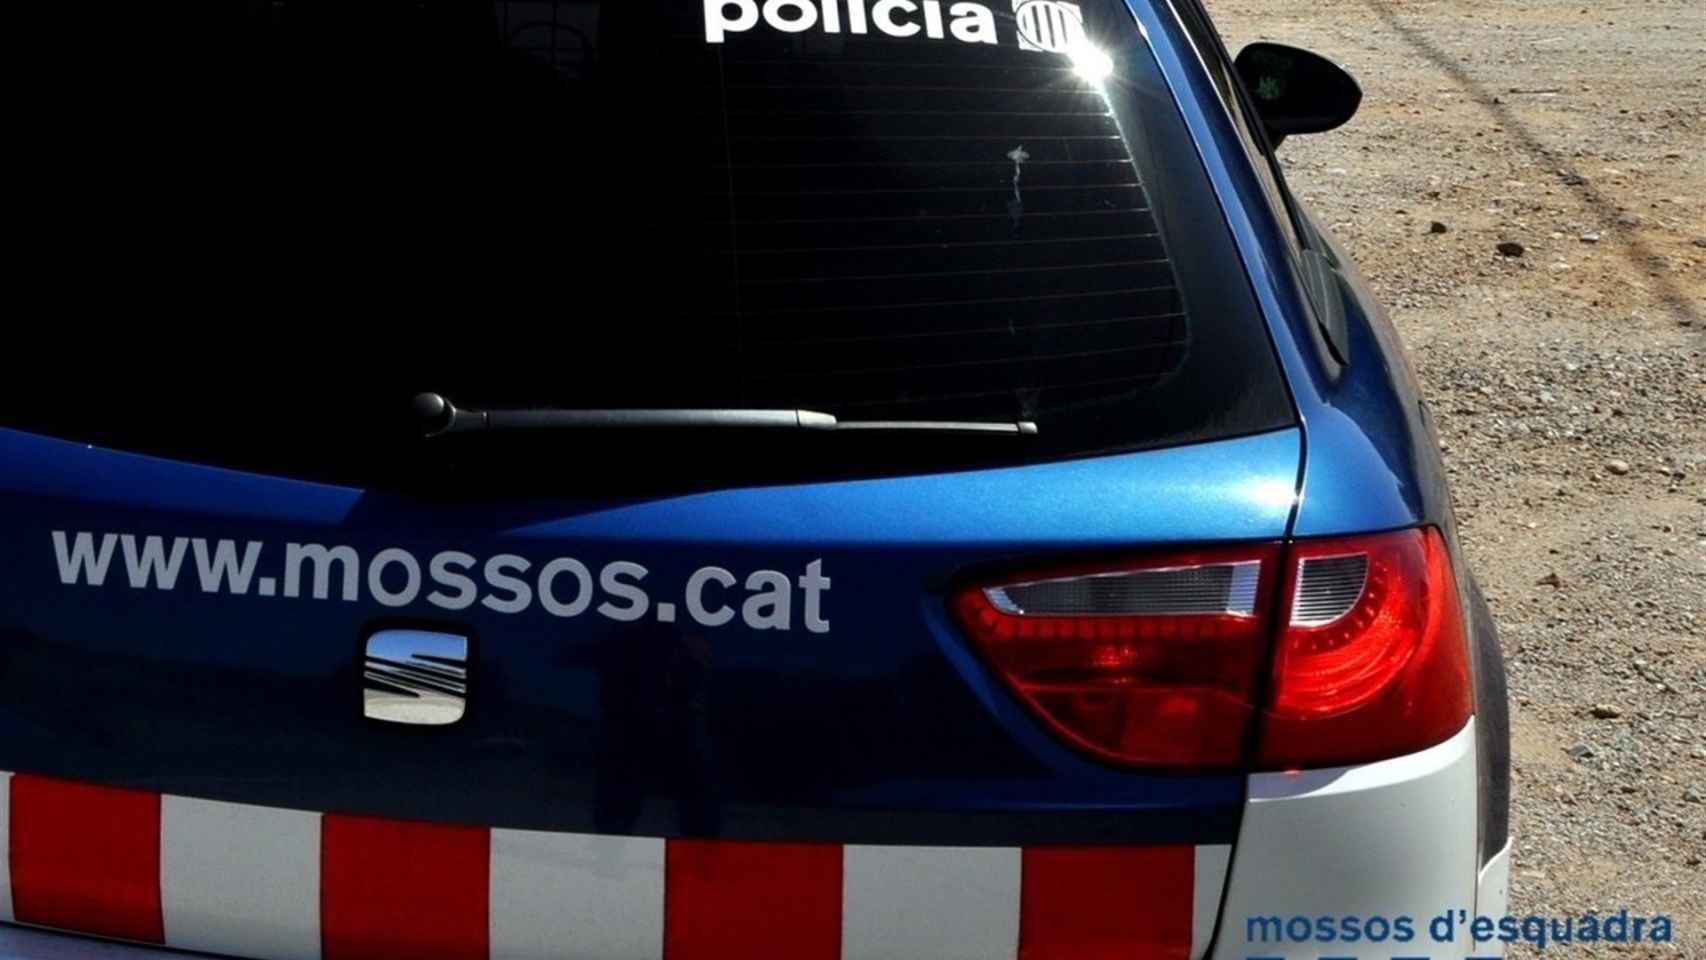 Un coche patrulla de los Mossos d'Esquadra / Mossos